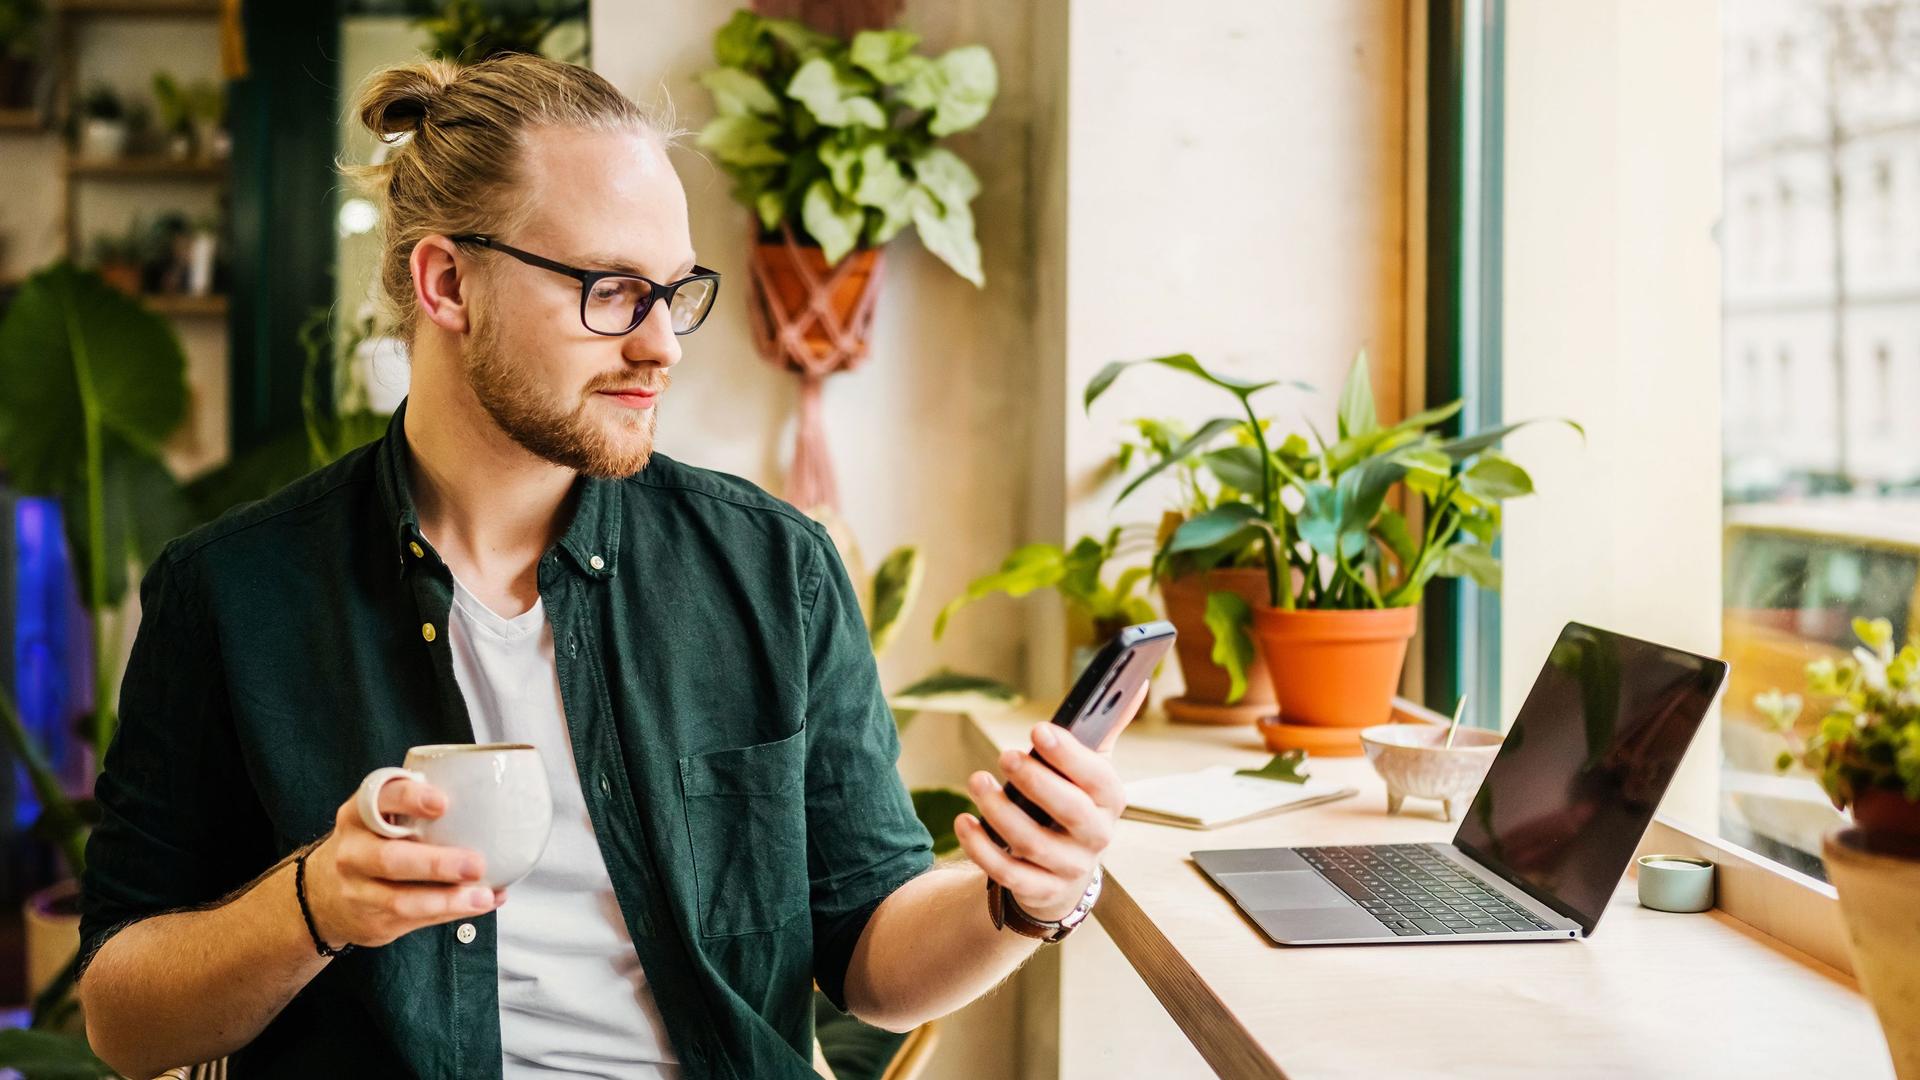 Junger Mann sitzt mit Laptop im Cafe und schaut auf sein Smartphone, während er in der rechten Hand eine Tasse hält.